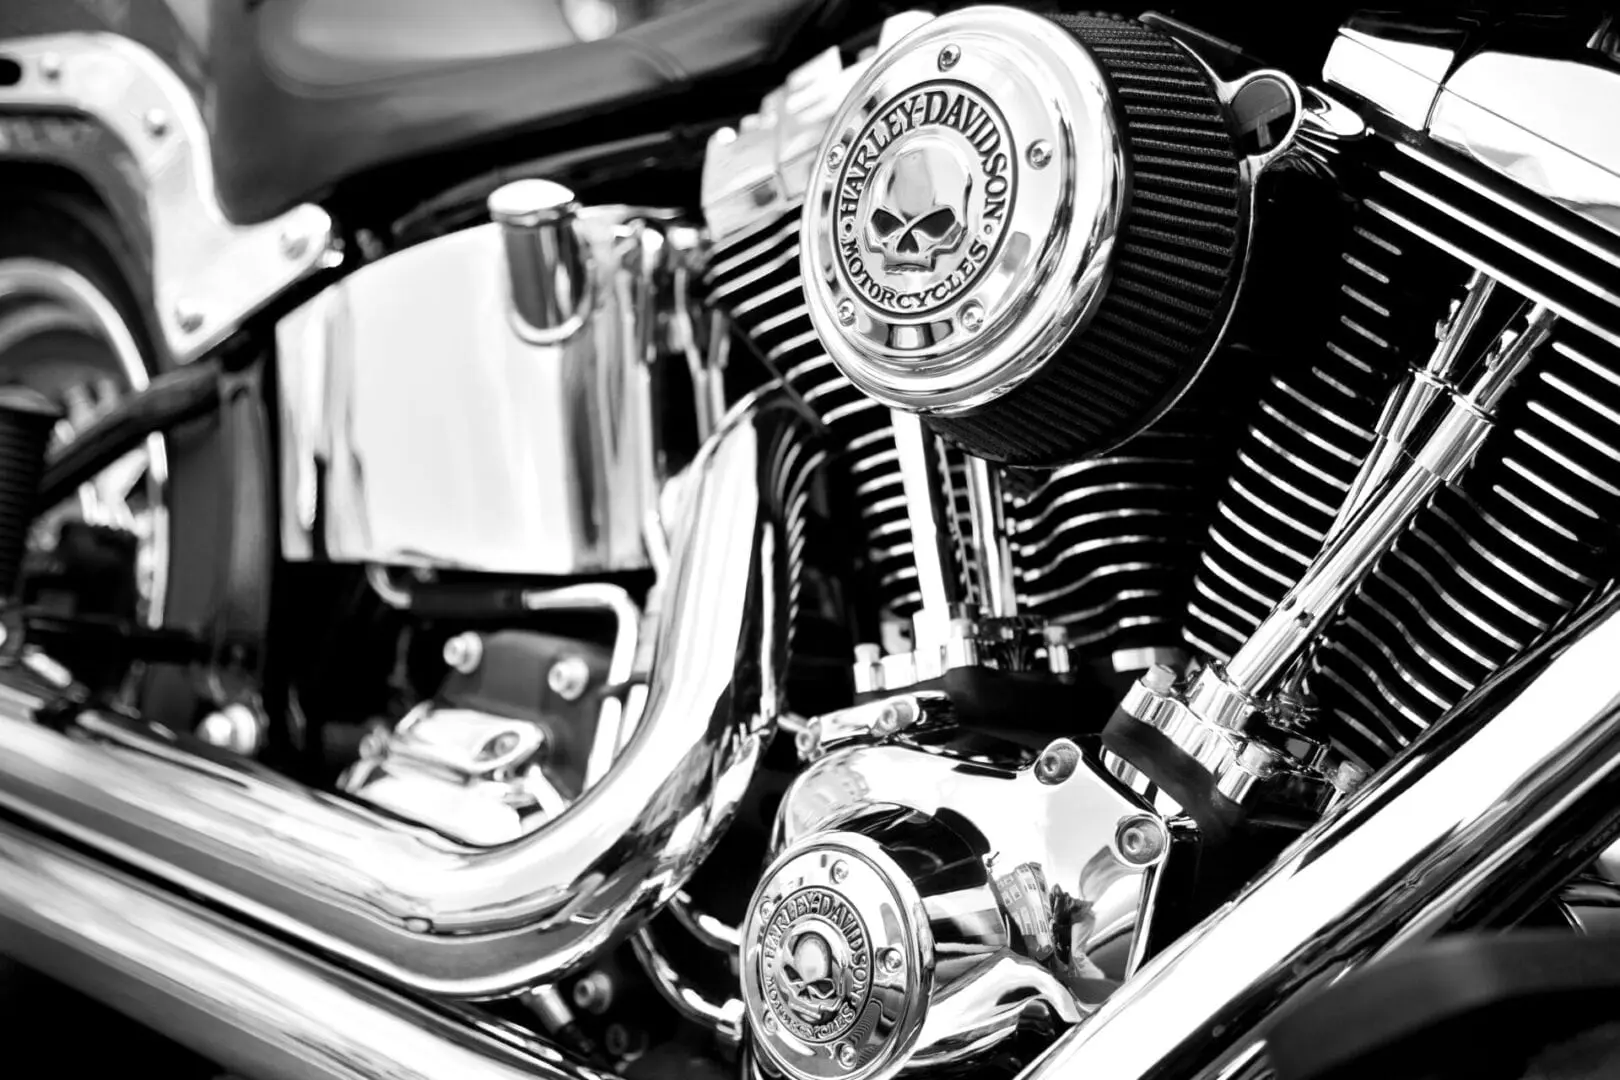 AMSOIL in Harley Davidson